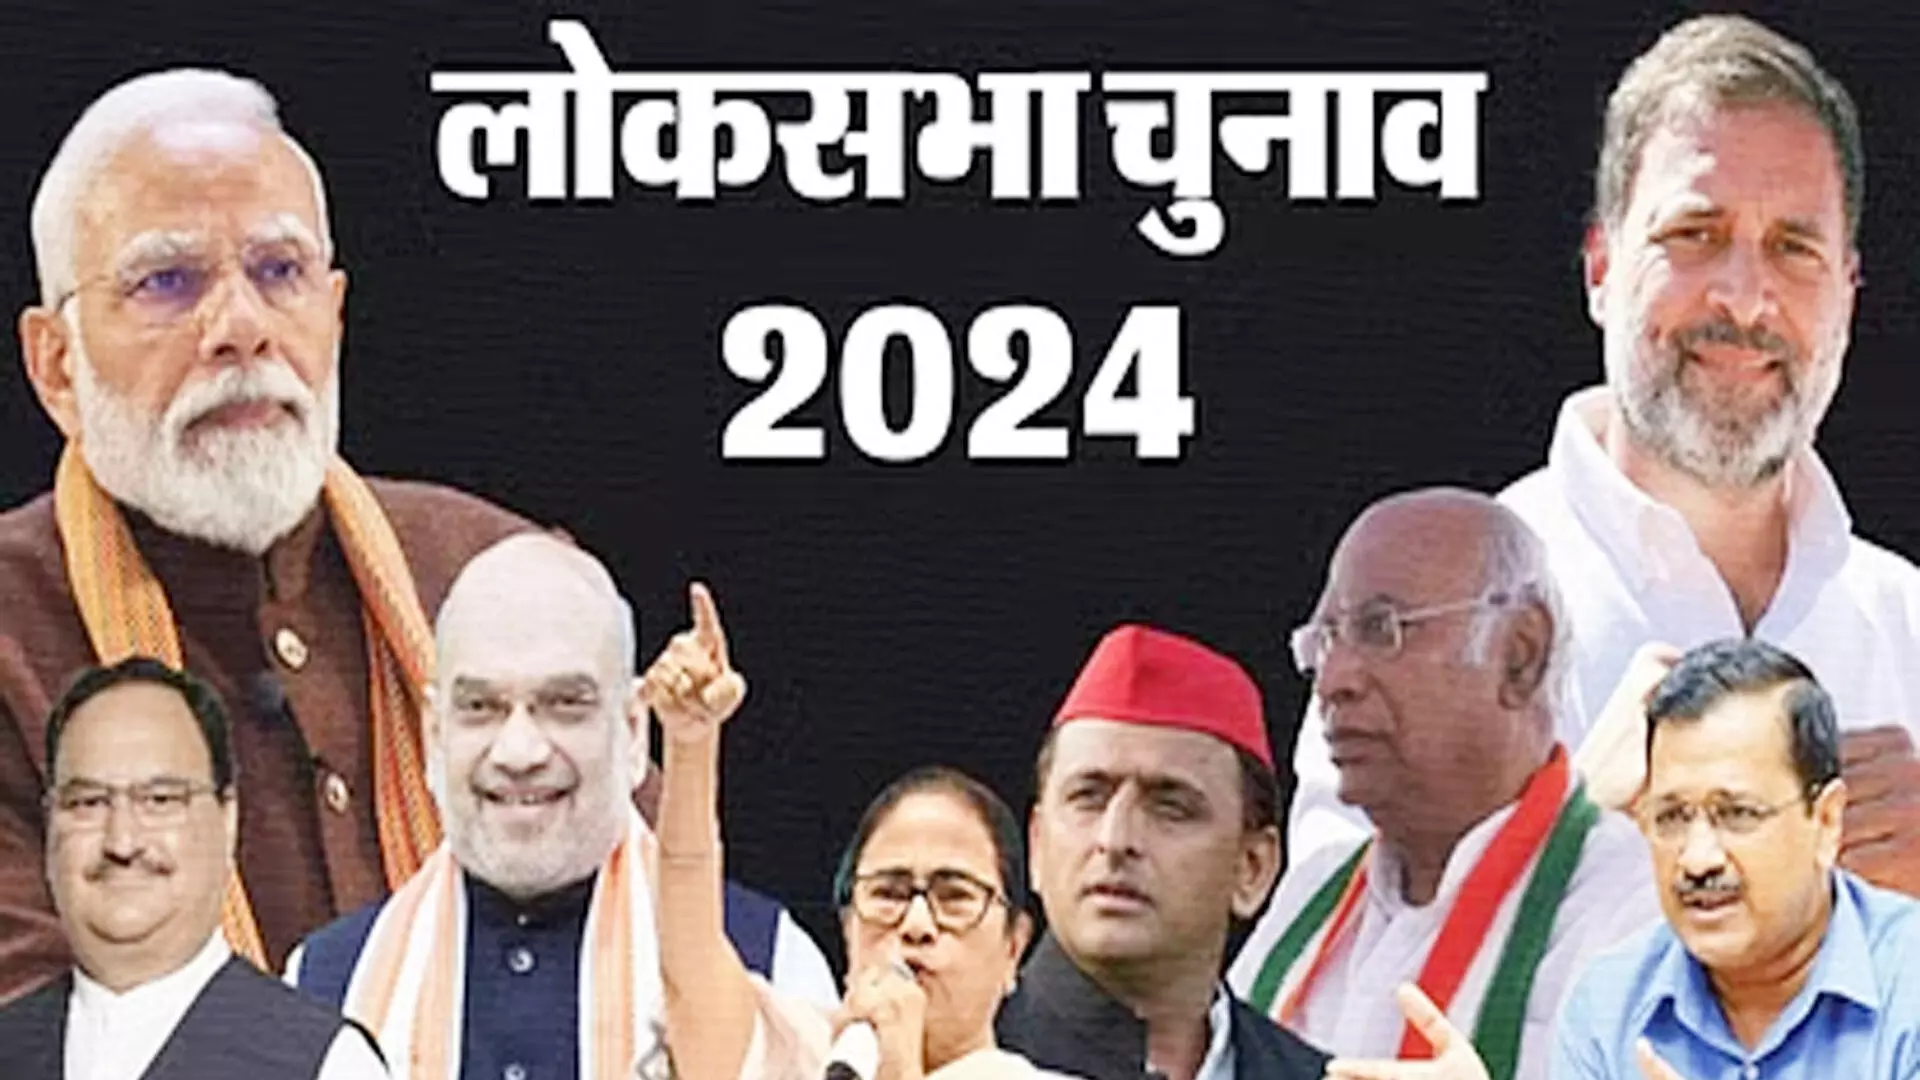 लोकसभा आम चुनाव -2024 के लिए बहुउद्देशीय नियंत्रण कक्ष की स्थापना